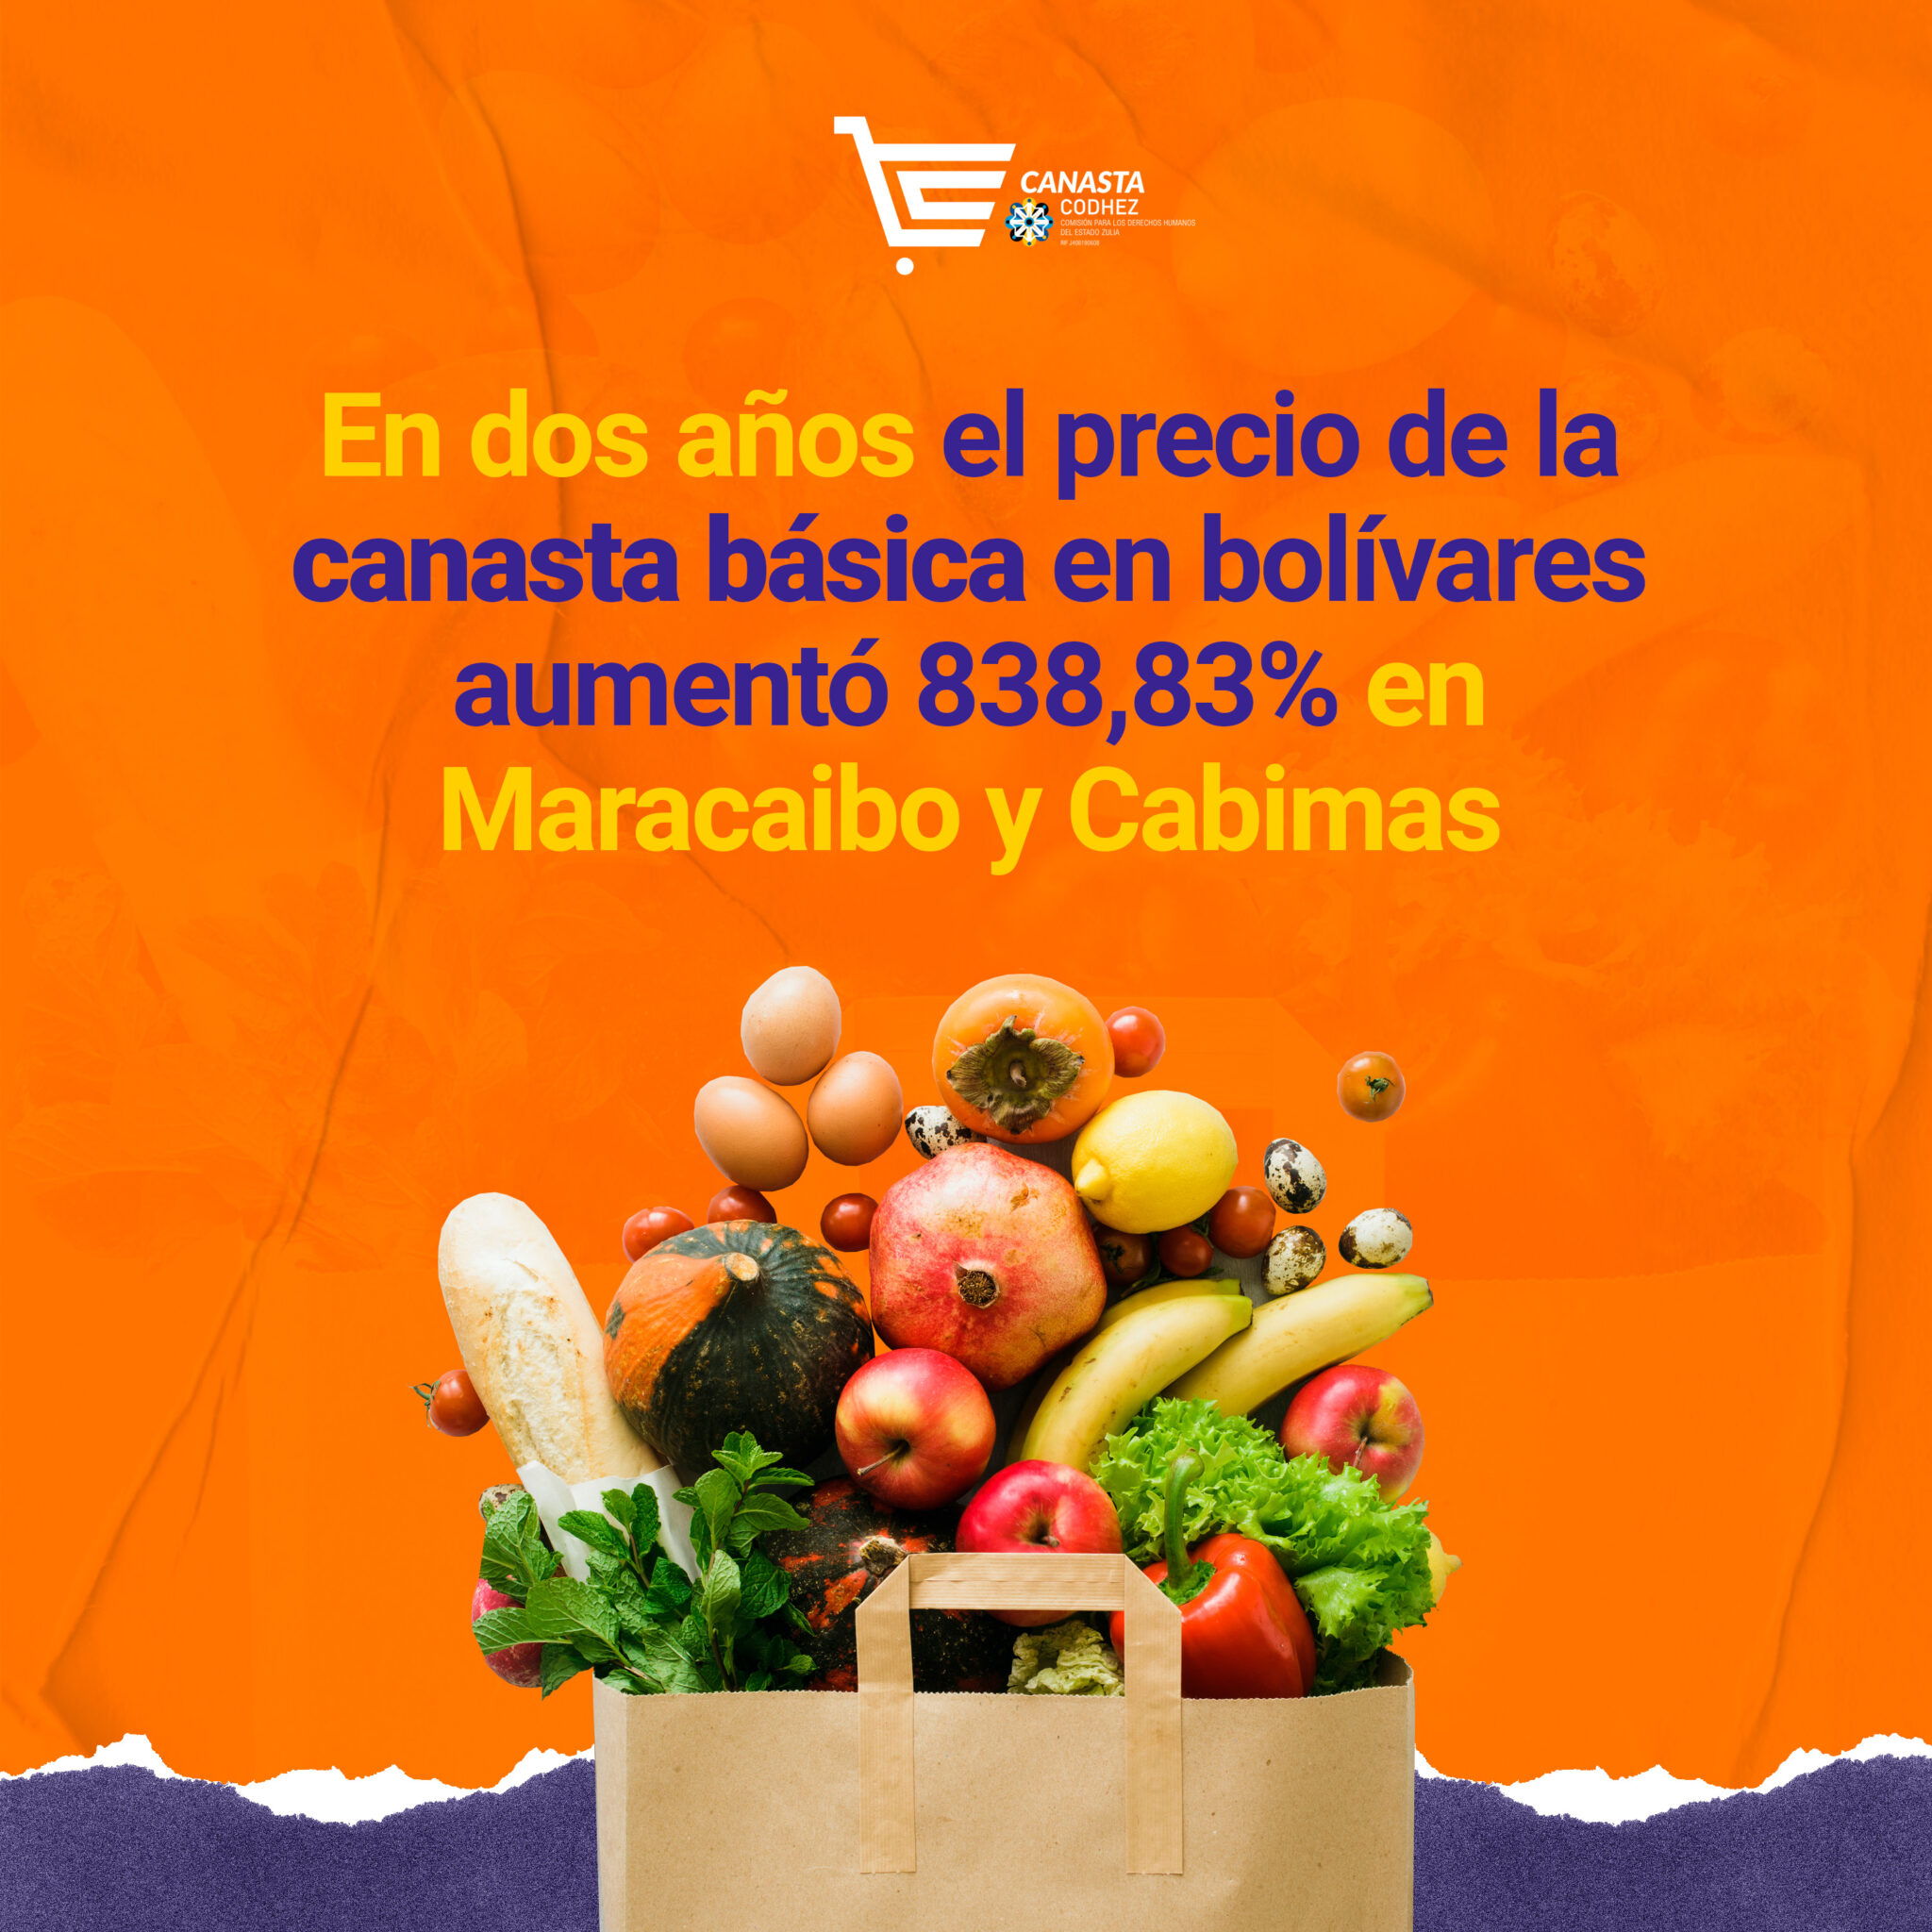 En dos años, el precio de la canasta básica en bolívares aumentó +838,83% en Maracaibo y Cabimas